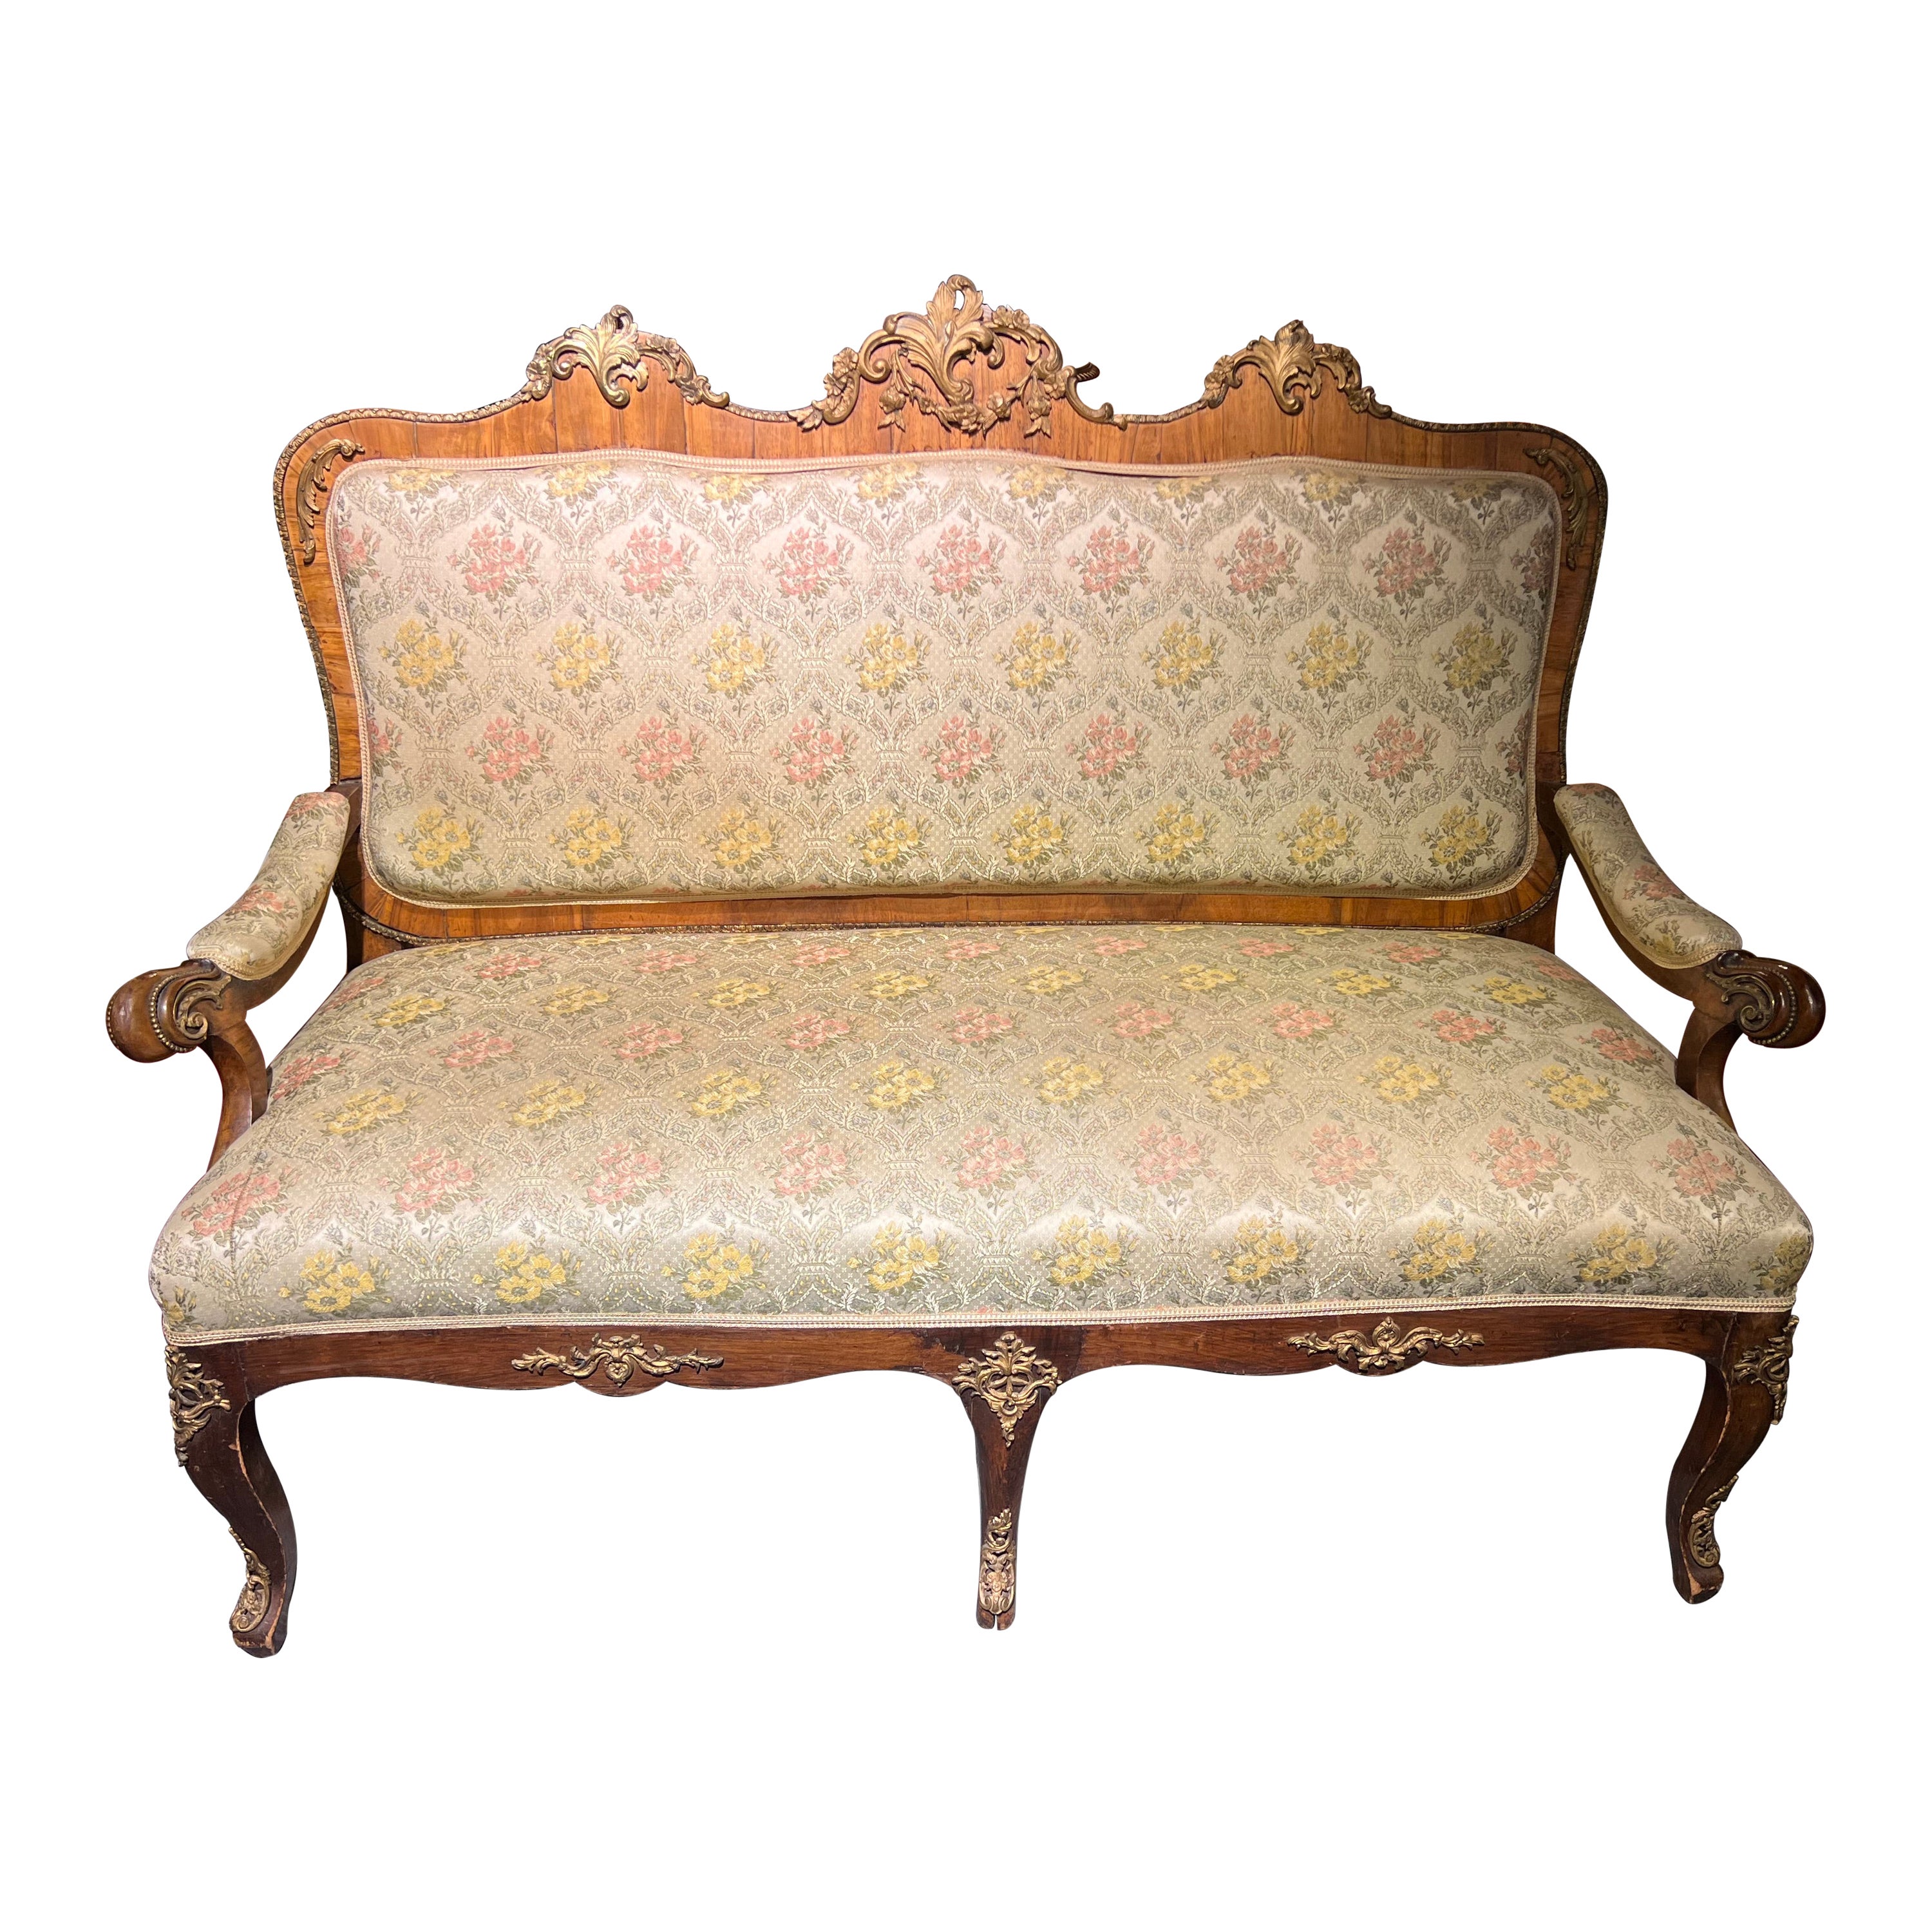 Seltenes antikes dresden-Barock-Sofa / Couch aus bronziertem massivem Nussbaumfurnier 1880